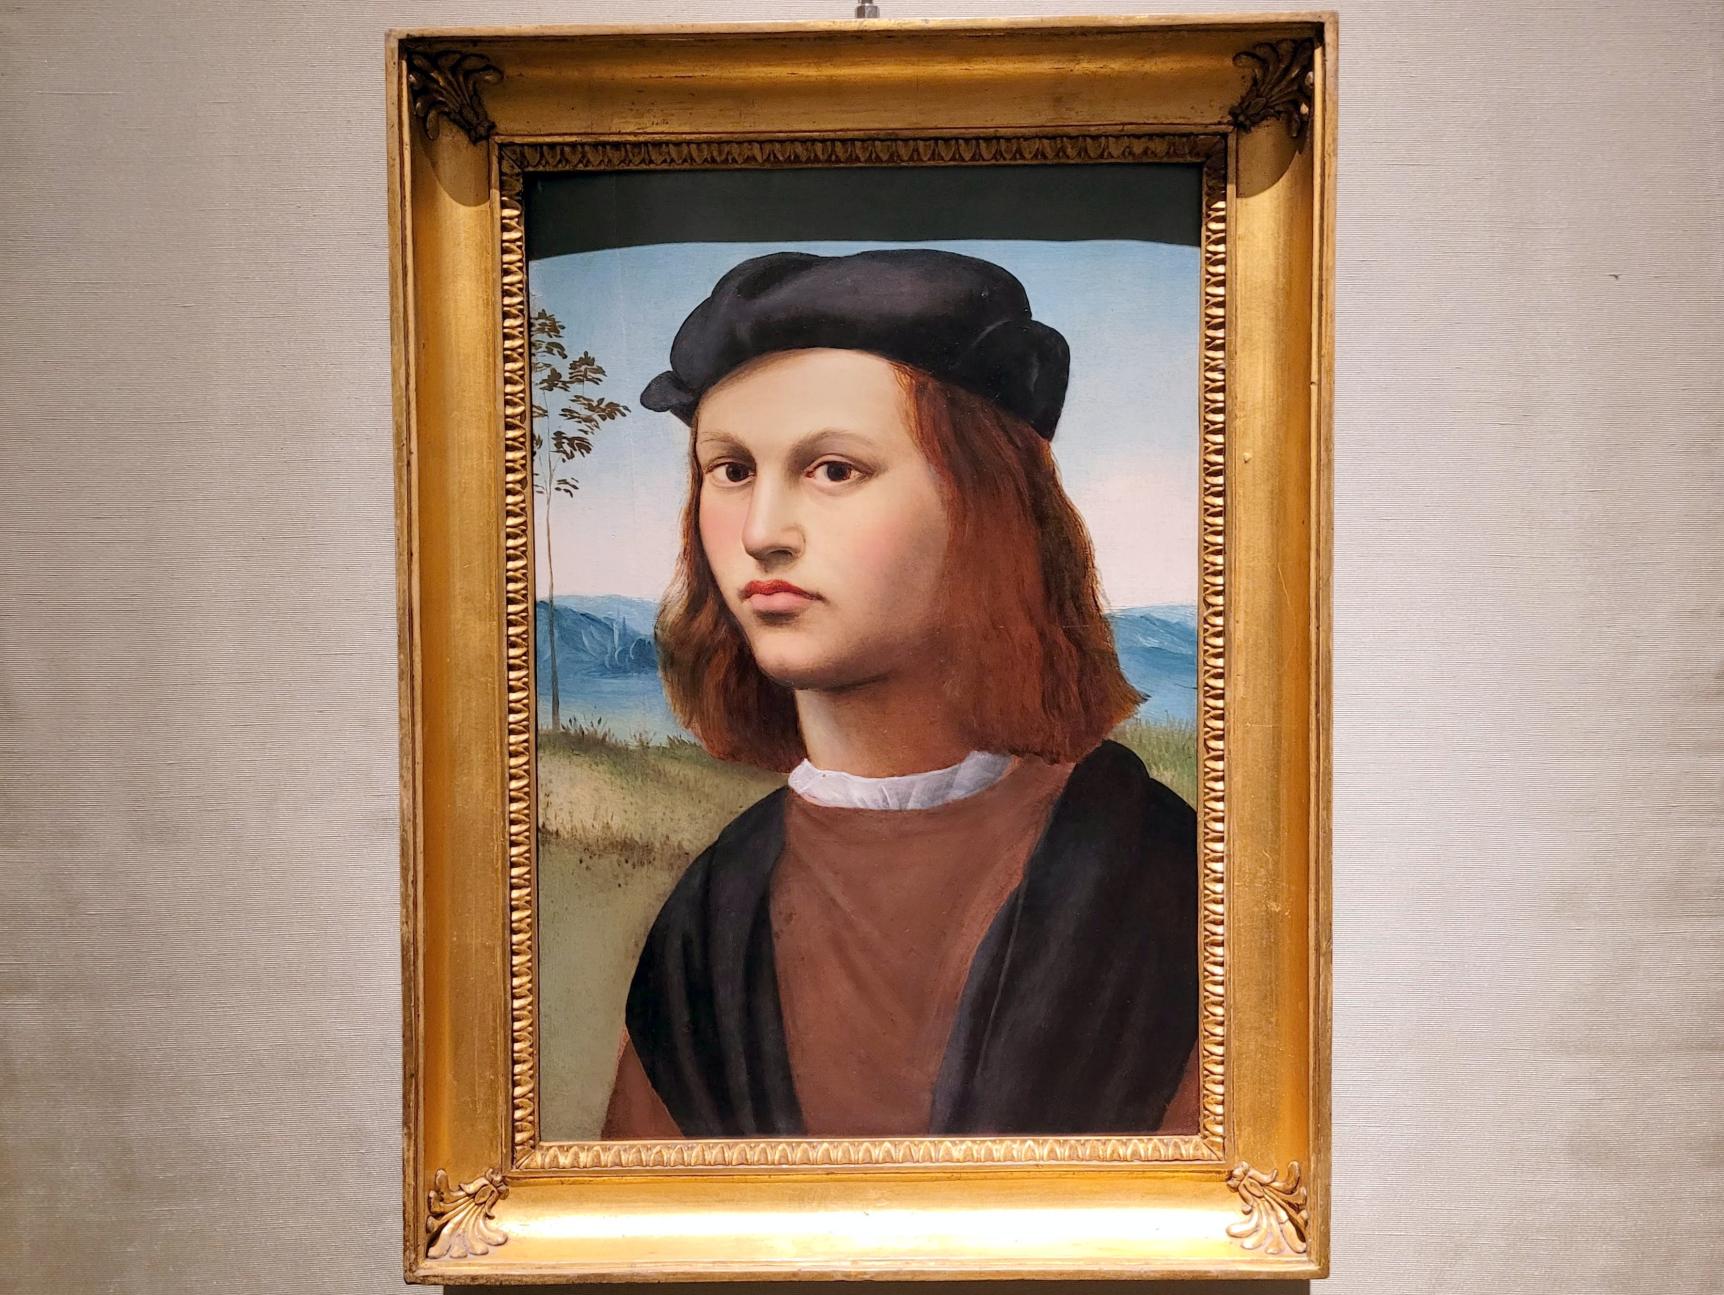 Ridolfo Ghirlandaio (1505–1555), Porträt eines jungen Mannes, Rom, Villa Borghese, Galleria Borghese, Beginn 16. Jhd.